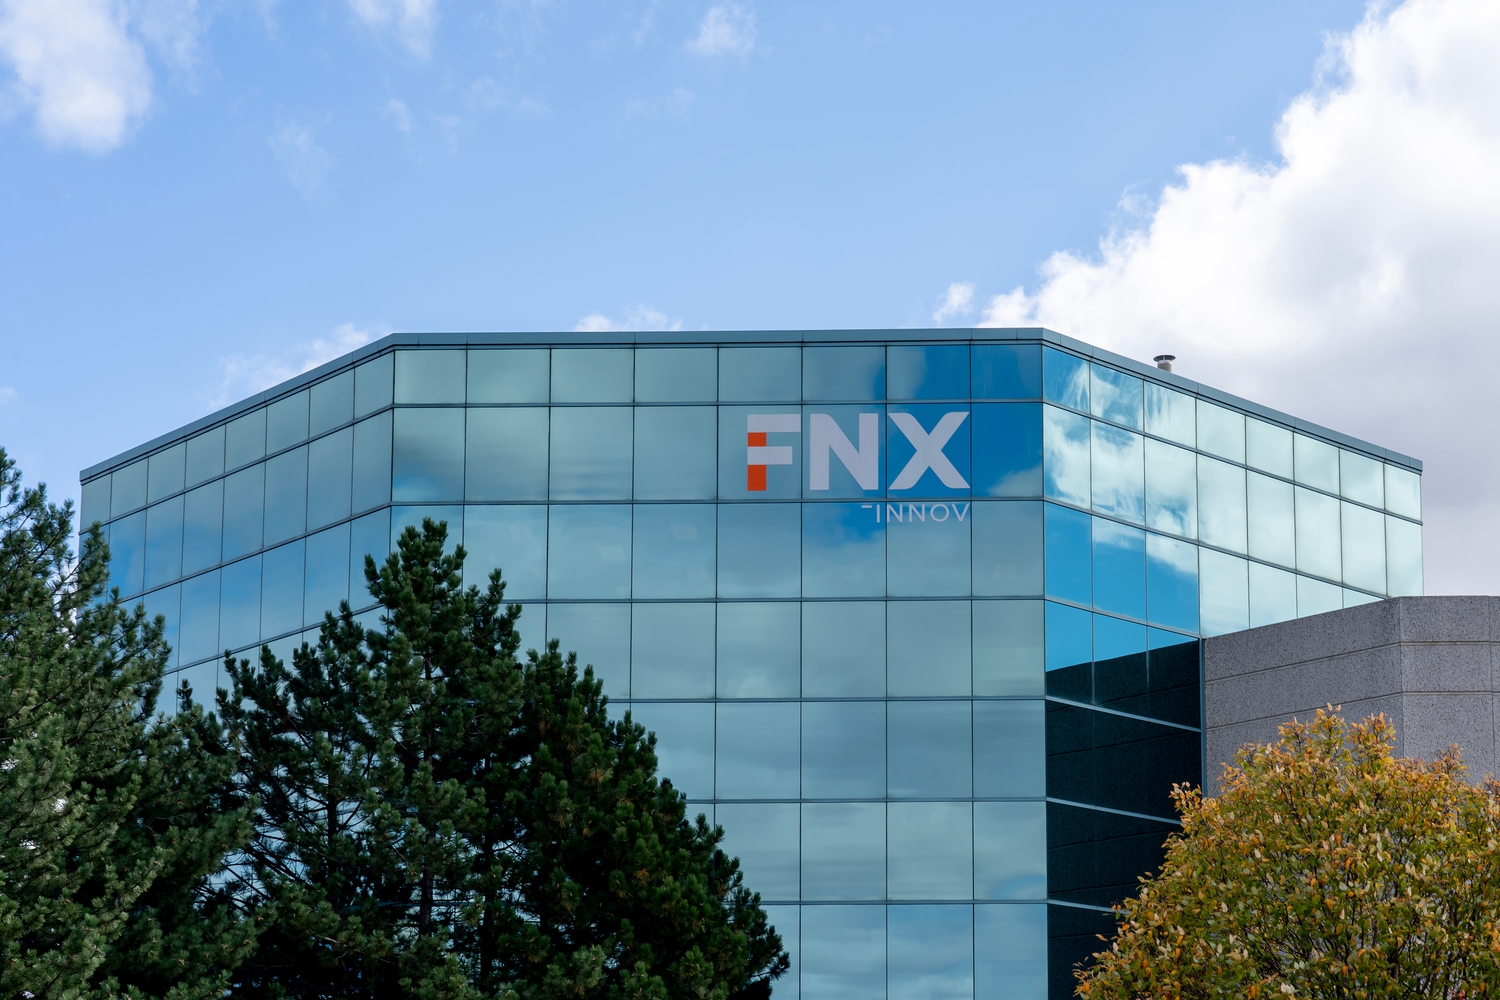 FNX-Innov